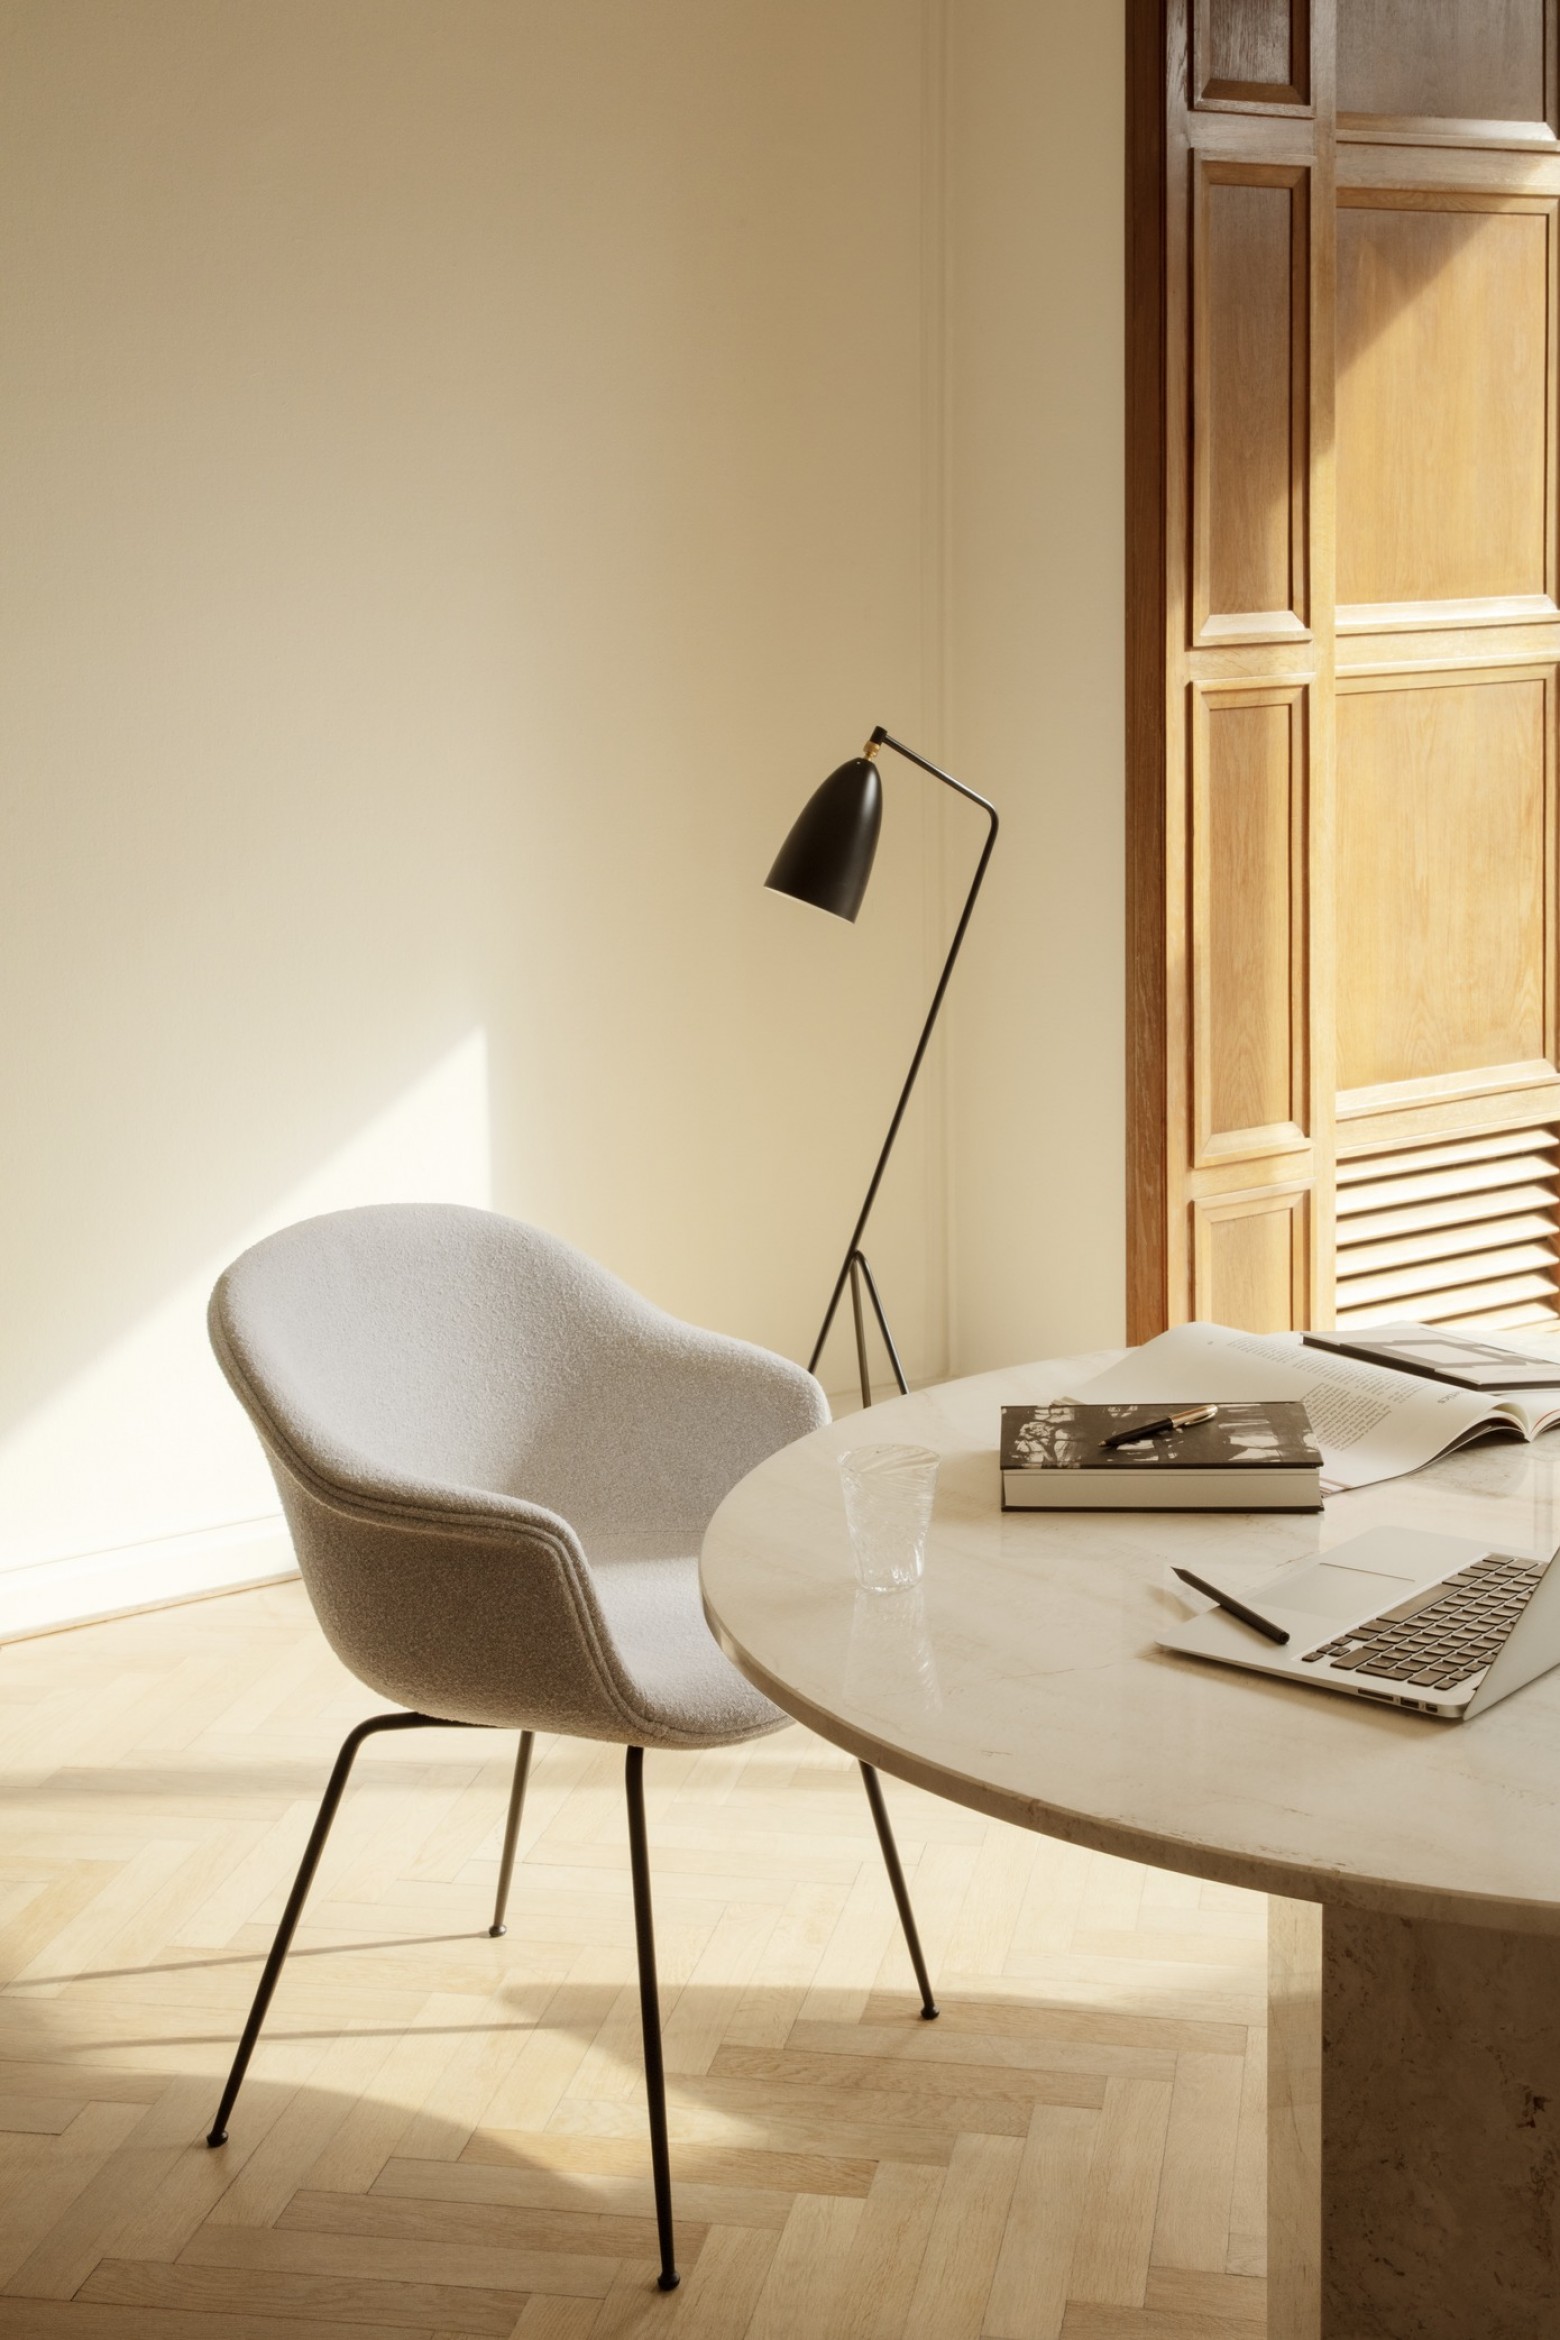 BAT dining chair, Gubi collectie: een verkooptopper  Victors Design Agency